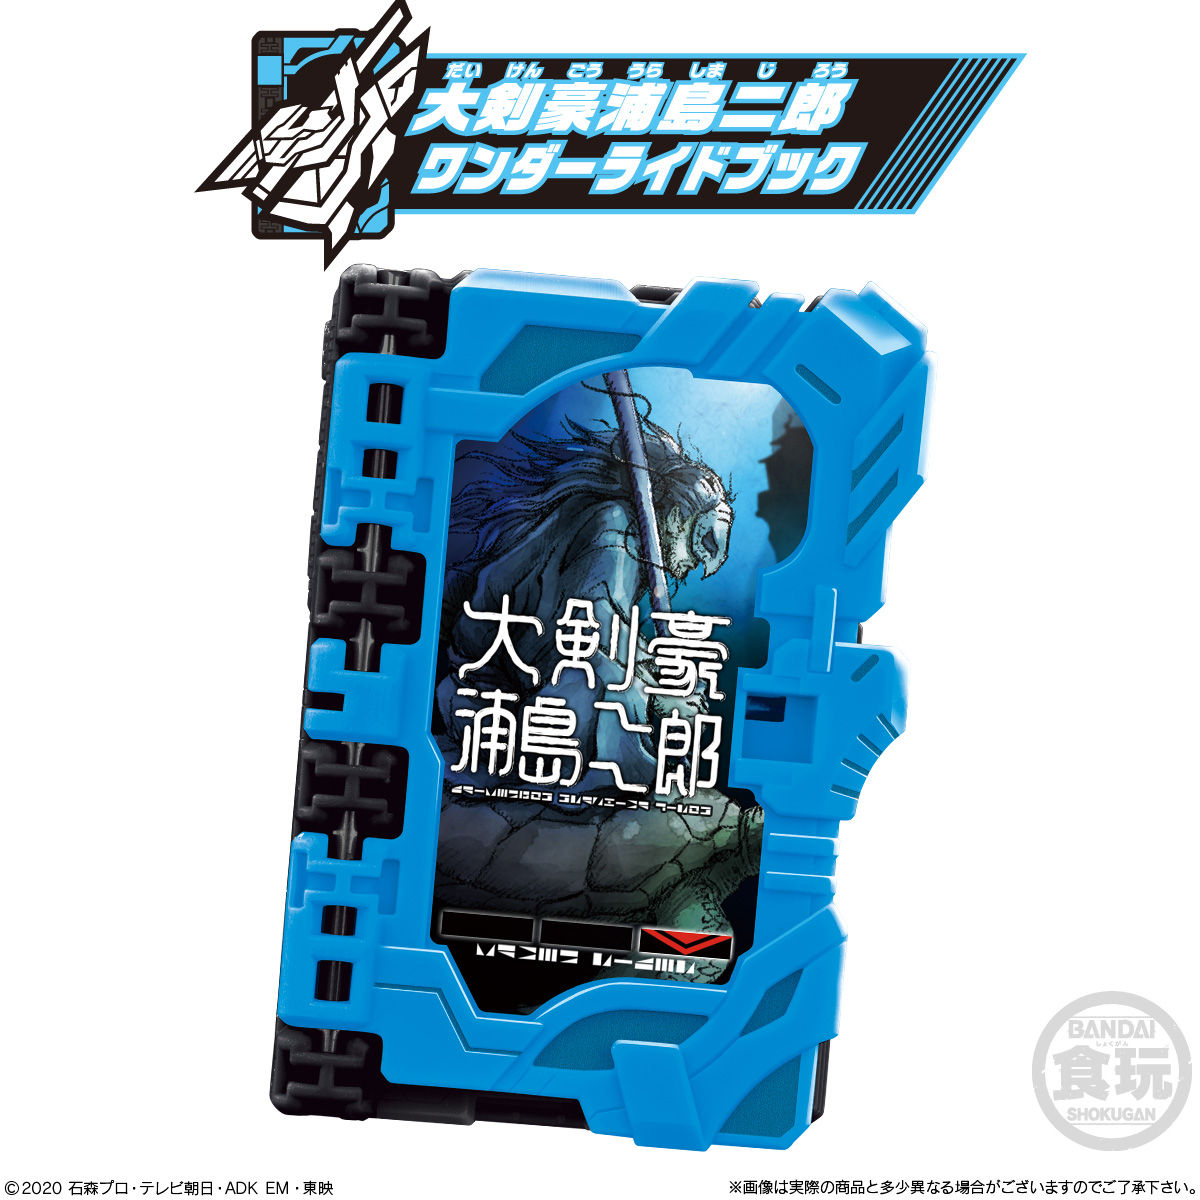 【食玩】仮面ライダーセイバー『コレクタブルワンダーライドブック SG05』8個入りBOX-005